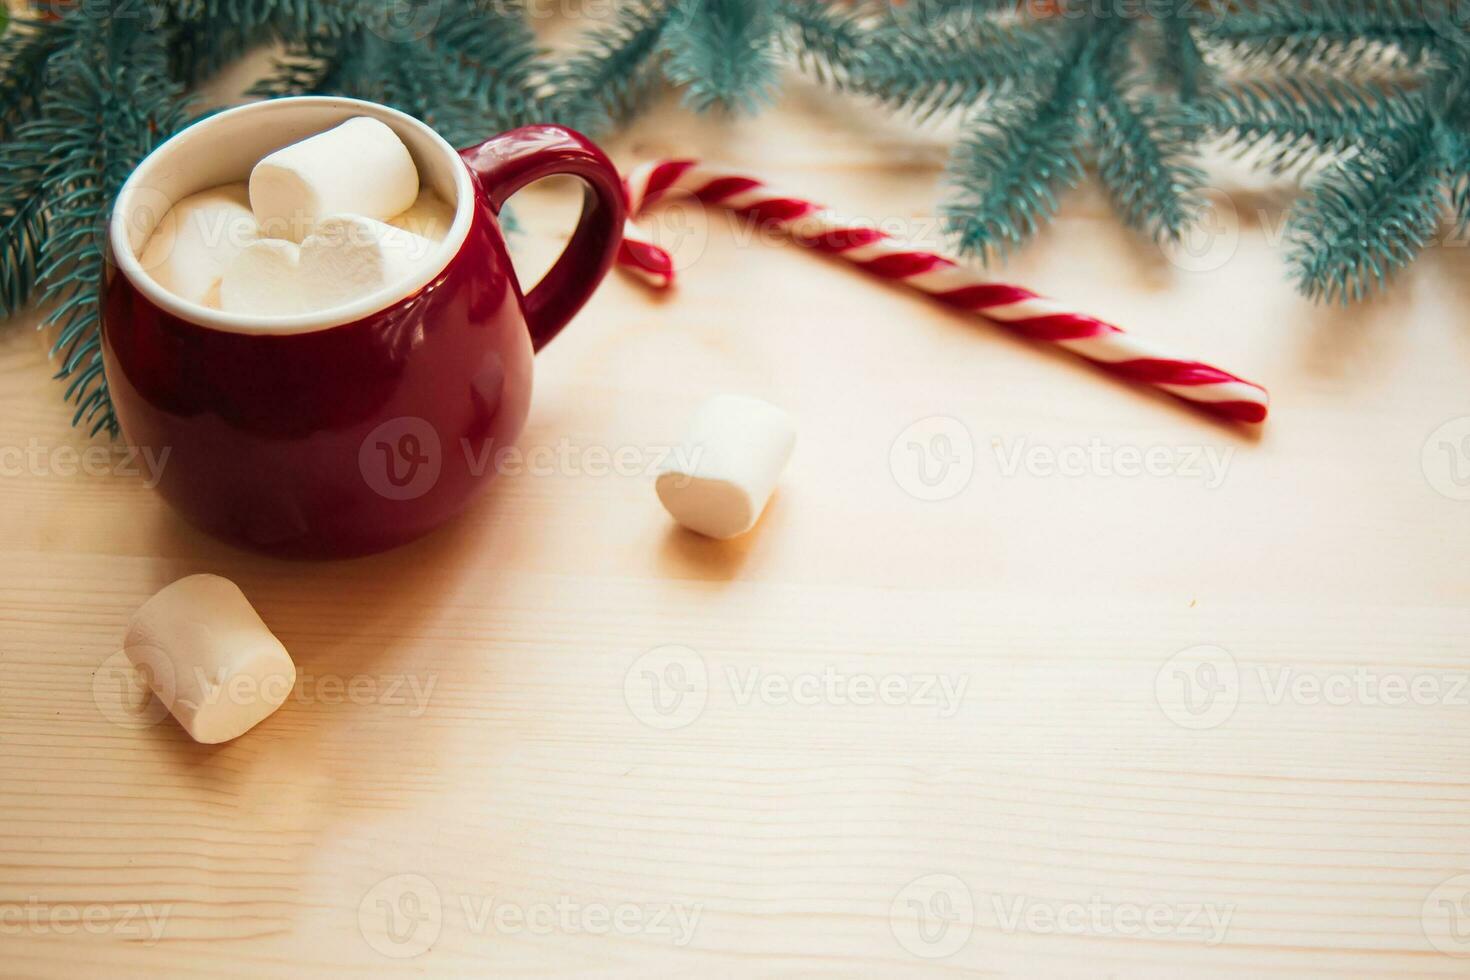 ed copos com quente chocolate ou cacau e marshmallow com doce grudar. Natal conceito com abeto árvore galhos. fechar-se, seletivo foco foto